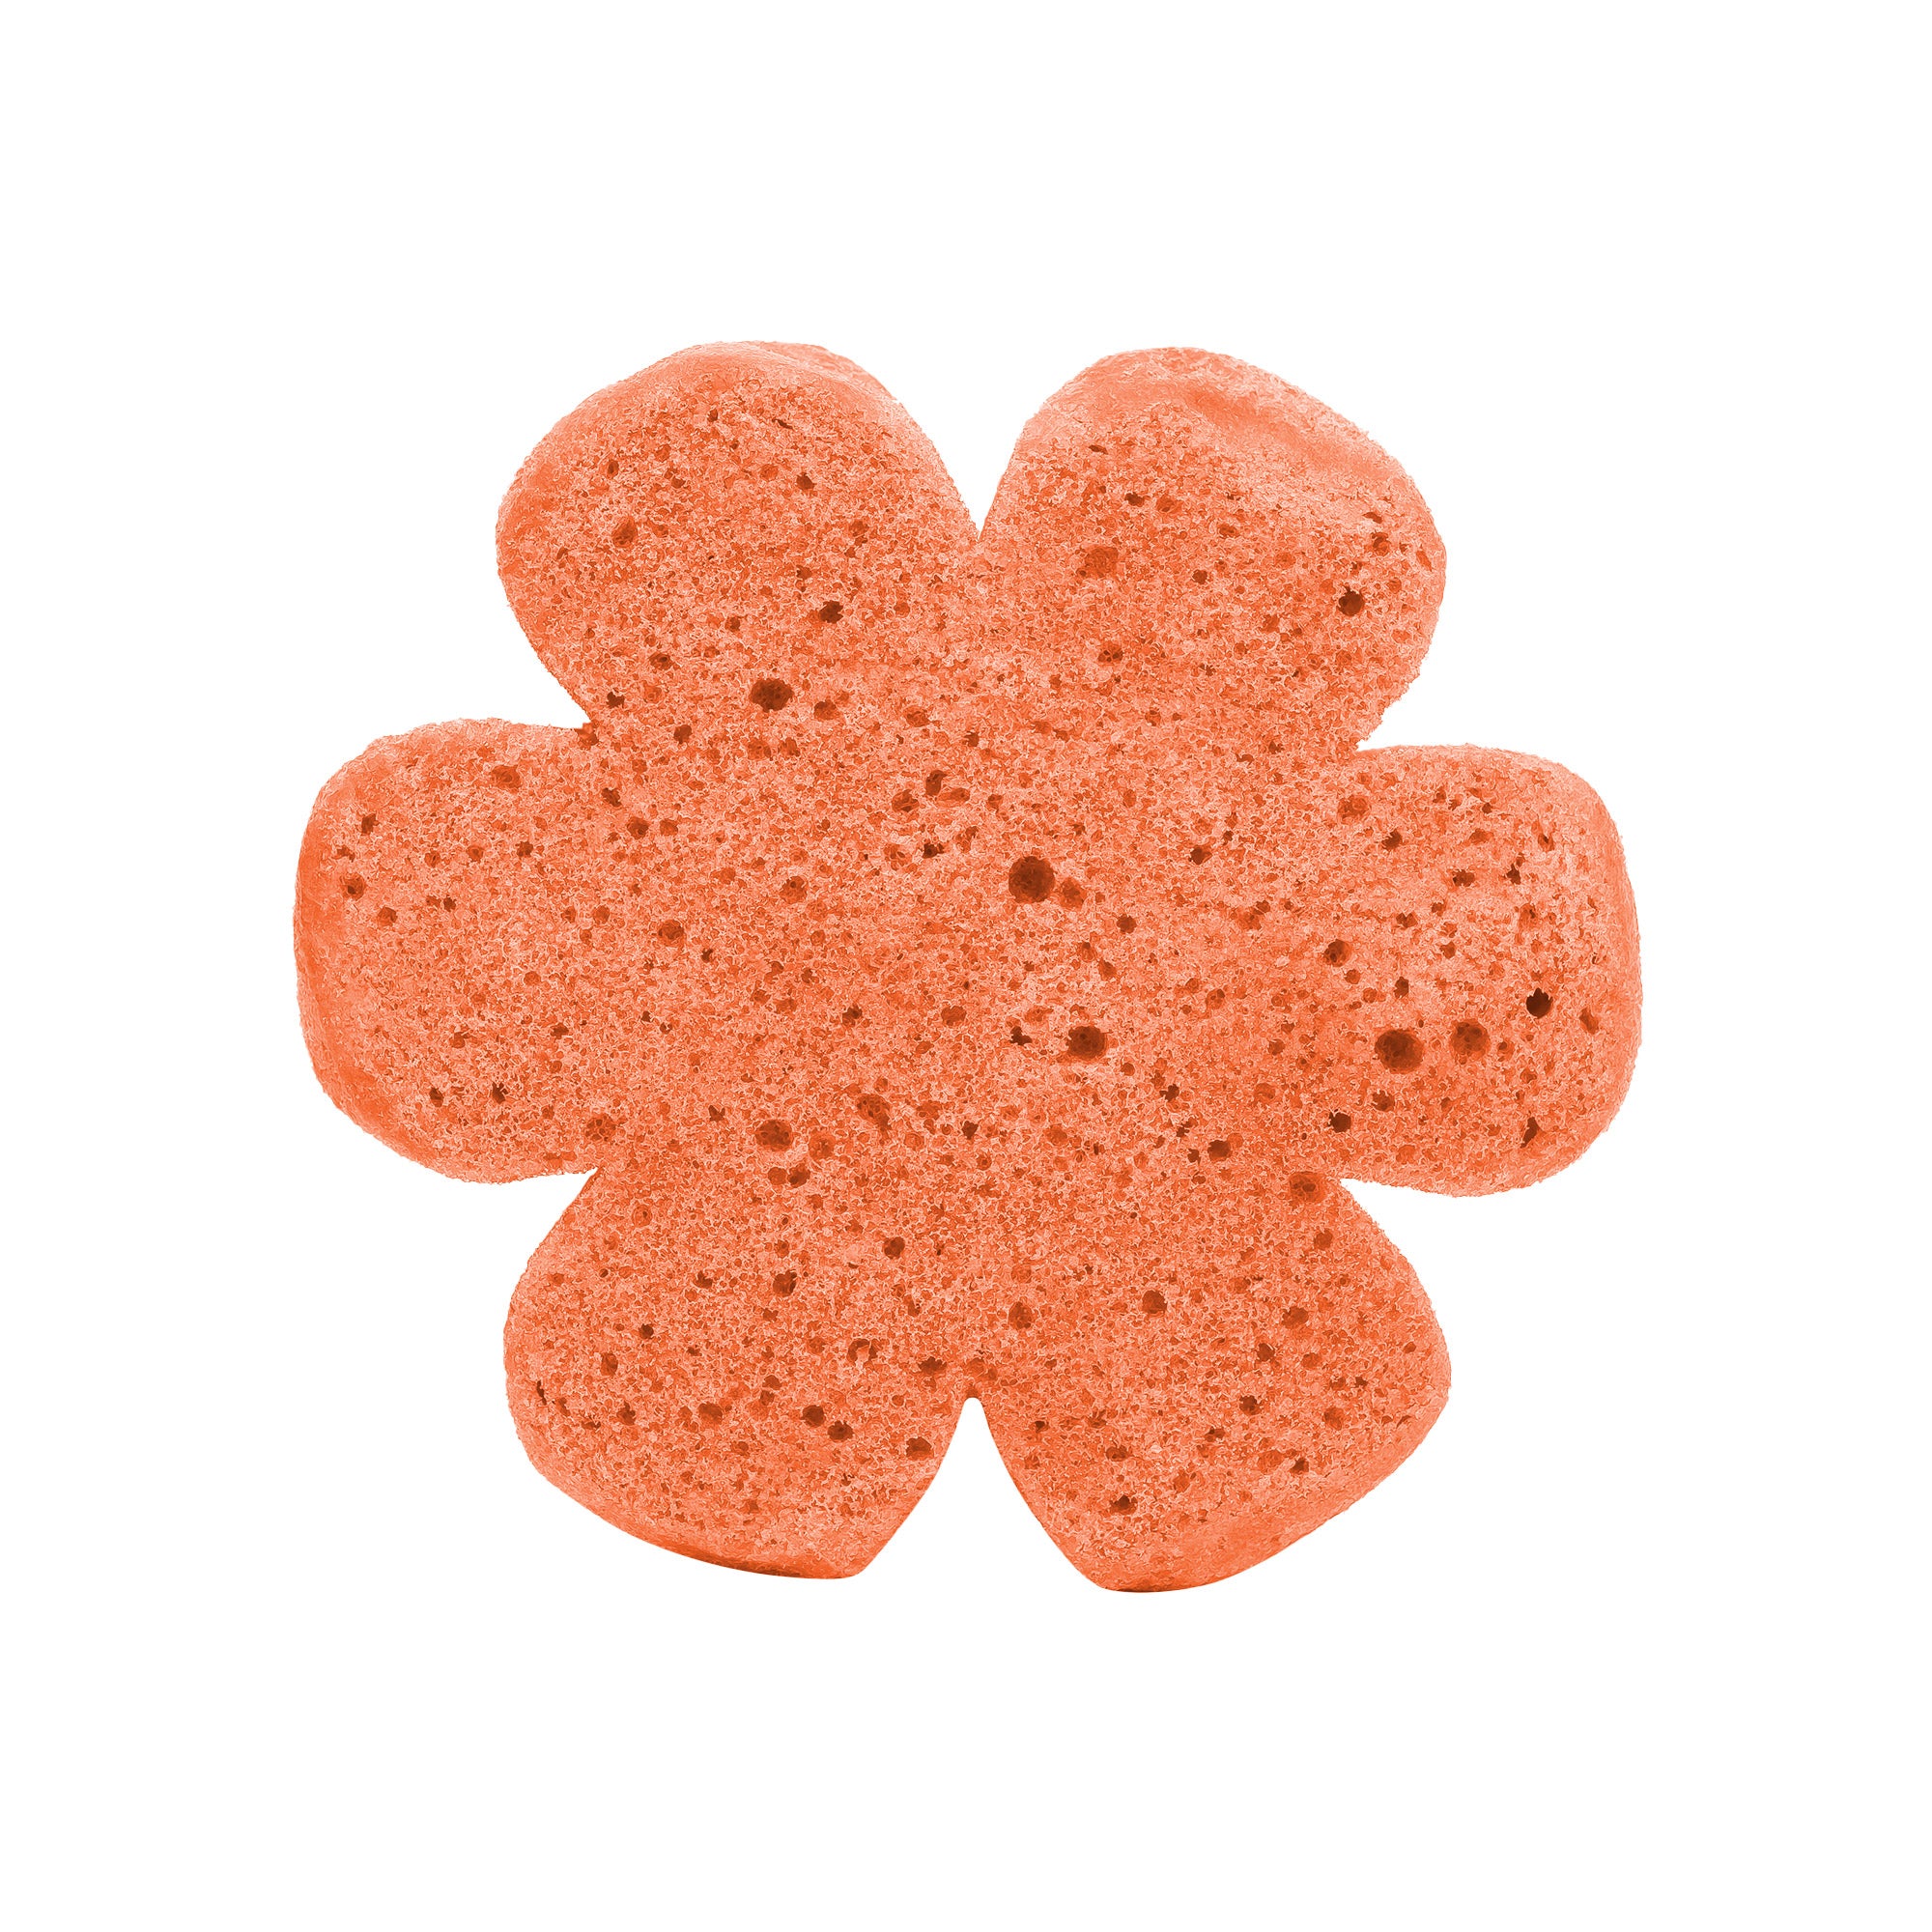 Soap Spongie-Sweet Splash